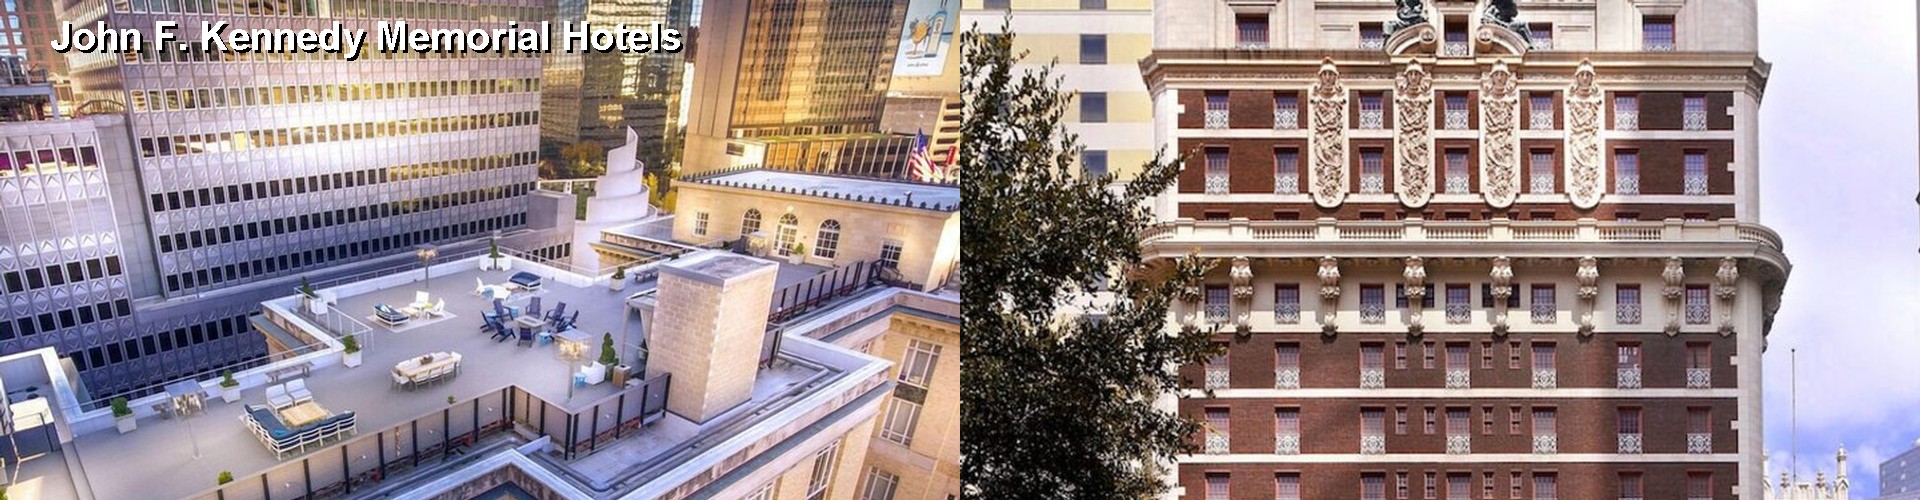 5 Best Hotels near John F. Kennedy Memorial